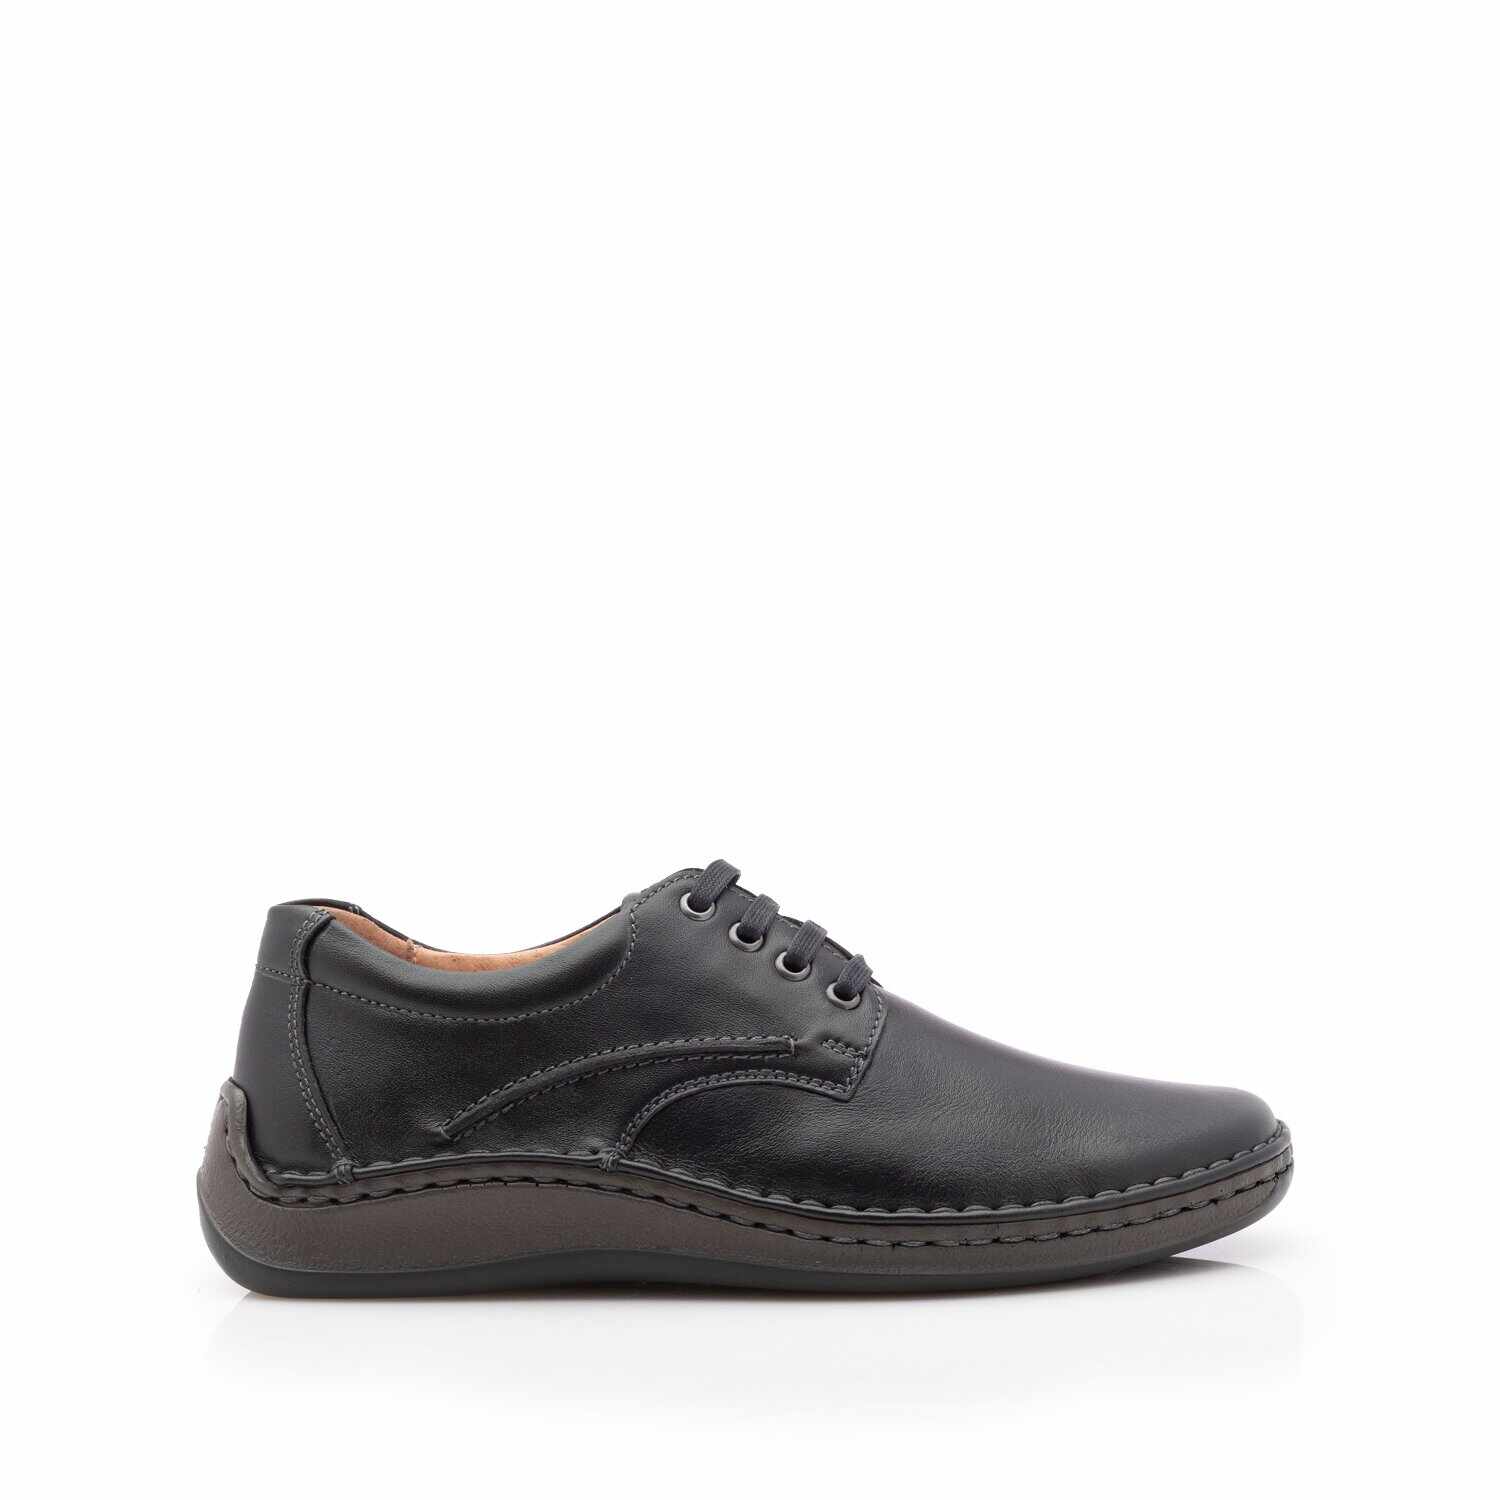 Pantofi casual barbati din piele naturala,Leofex - 918 Negru Box